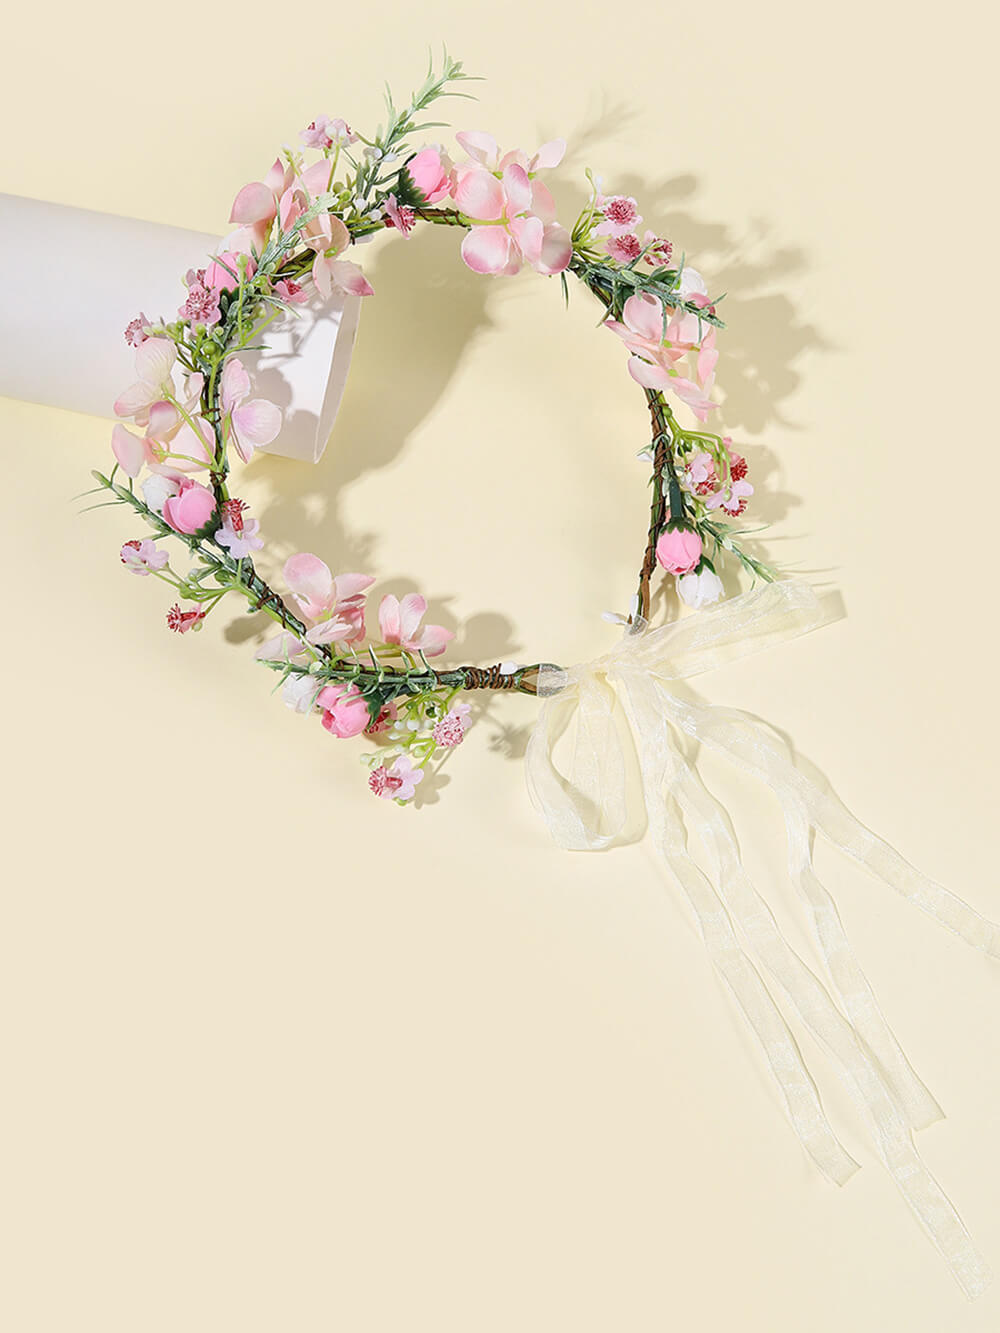 Corona de flores nupciales - Pétalo de rosa y flor de melocotón